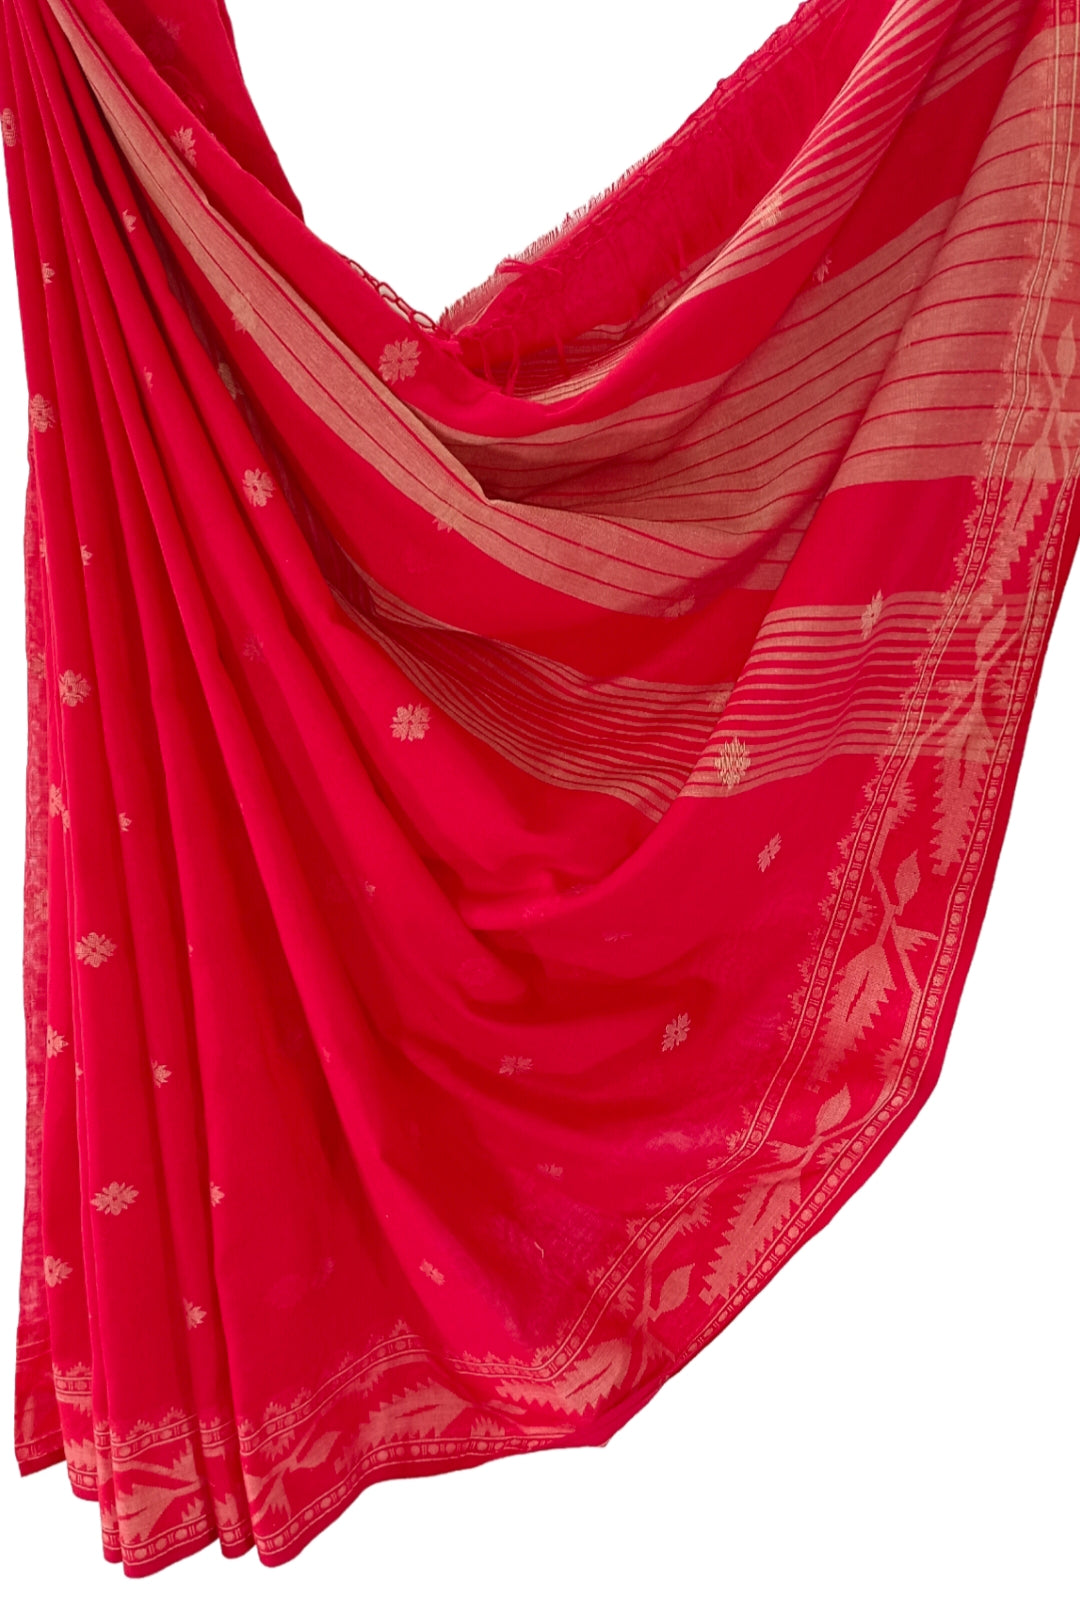 Bright Red & Beige Soft Handloom Cotton Saree